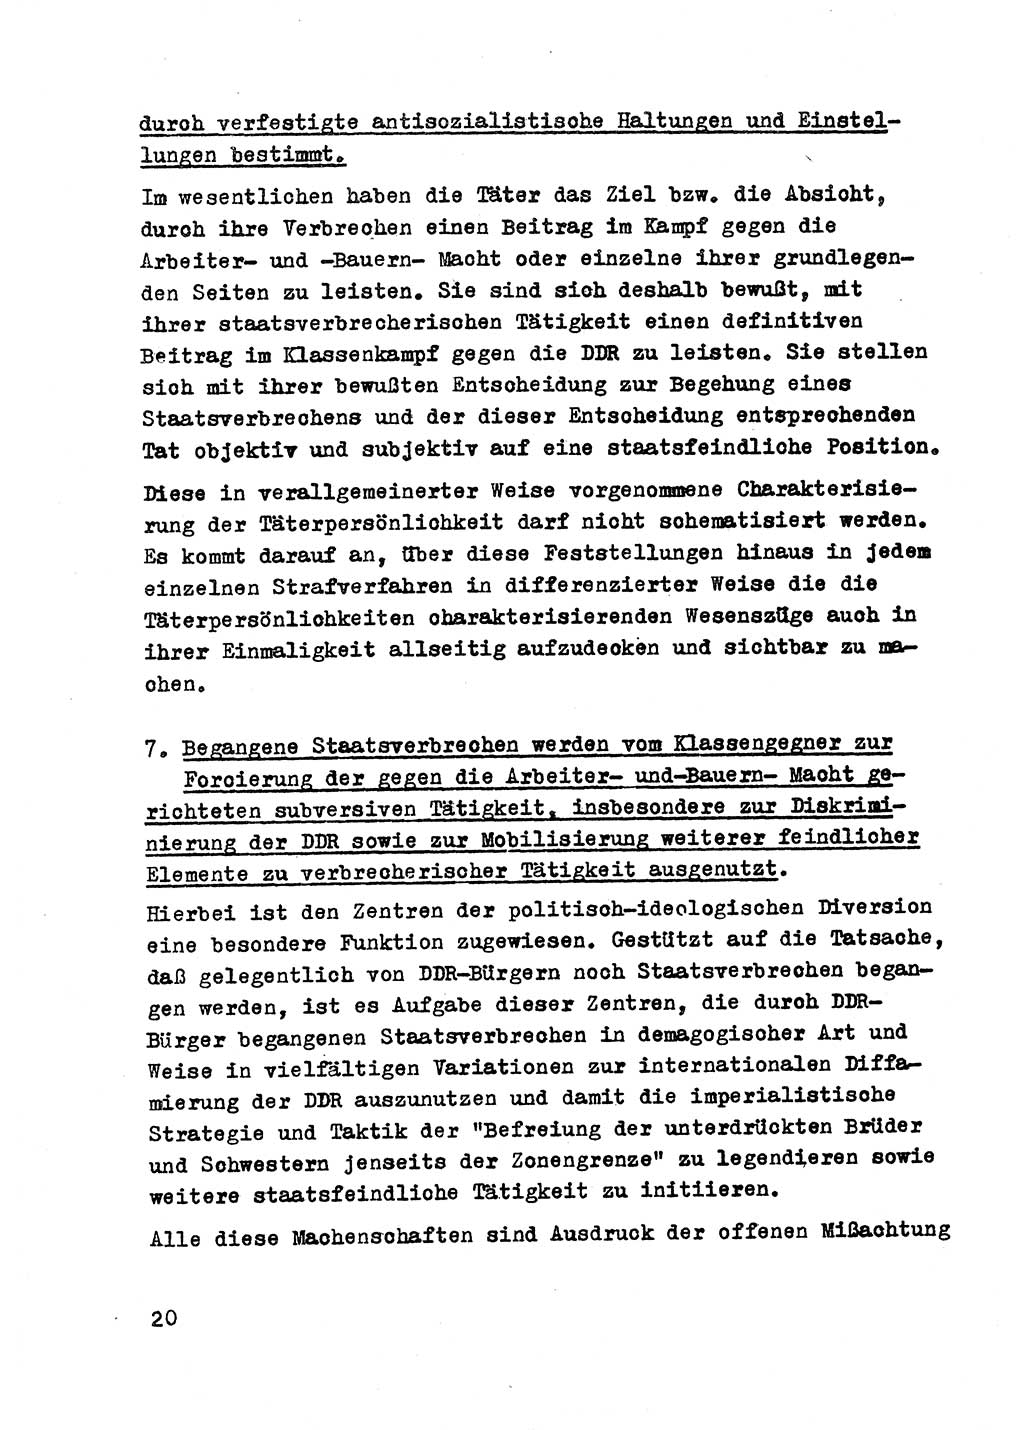 Strafrecht der DDR (Deutsche Demokratische Republik), Besonderer Teil, Lehrmaterial, Heft 2 1969, Seite 20 (Strafr. DDR BT Lehrmat. H. 2 1969, S. 20)